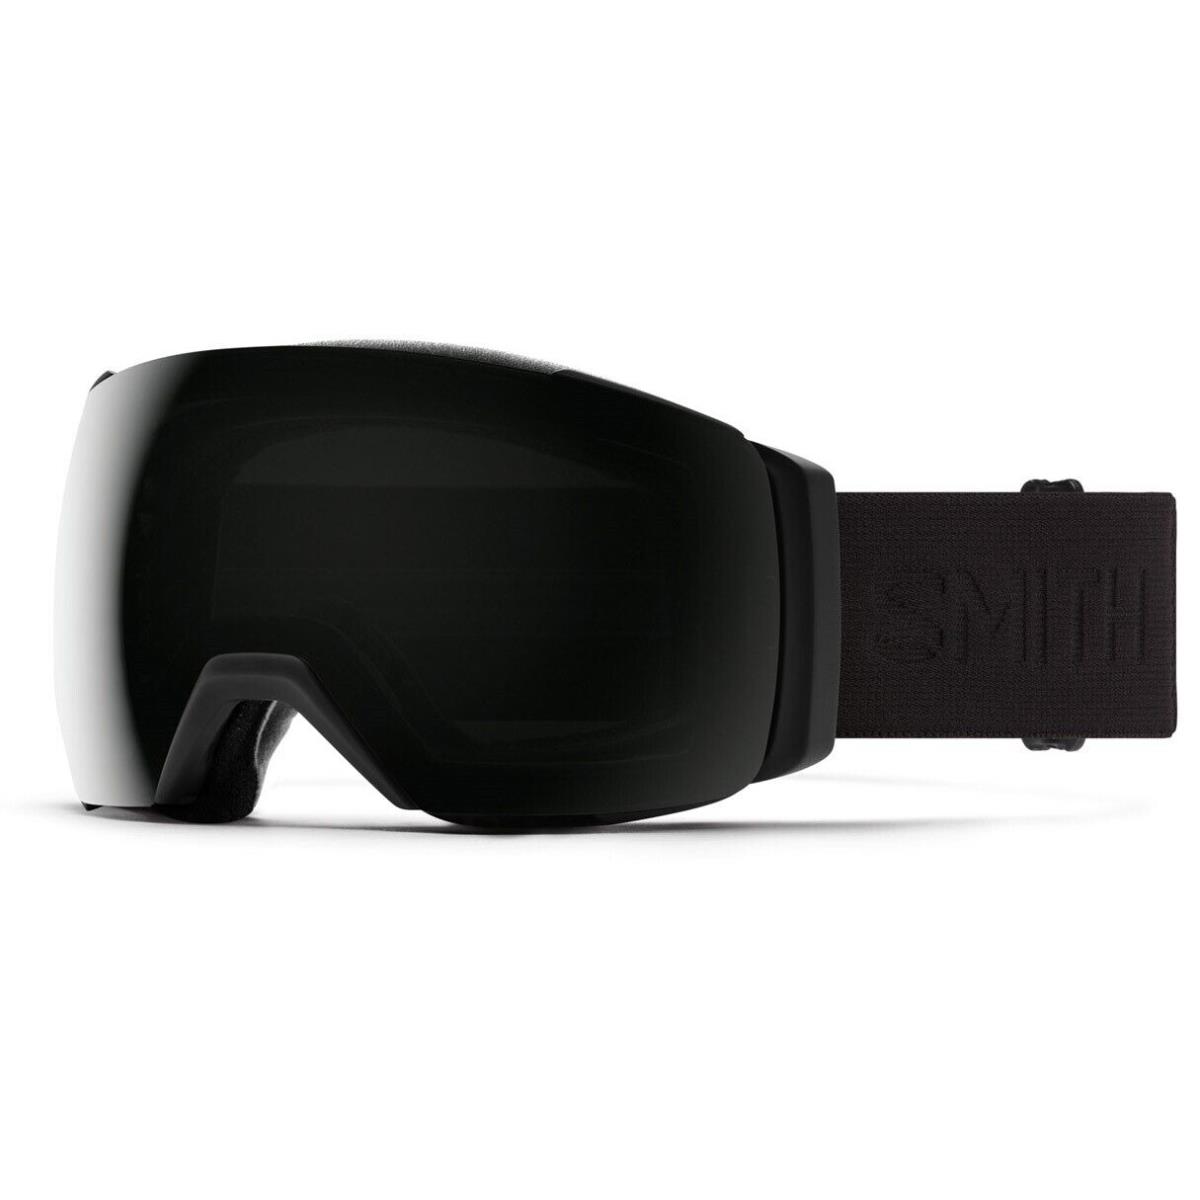 Smith I/o Mag XL Ski / Snow Goggles Blackout Chromapop Sun Black Lens +bonus